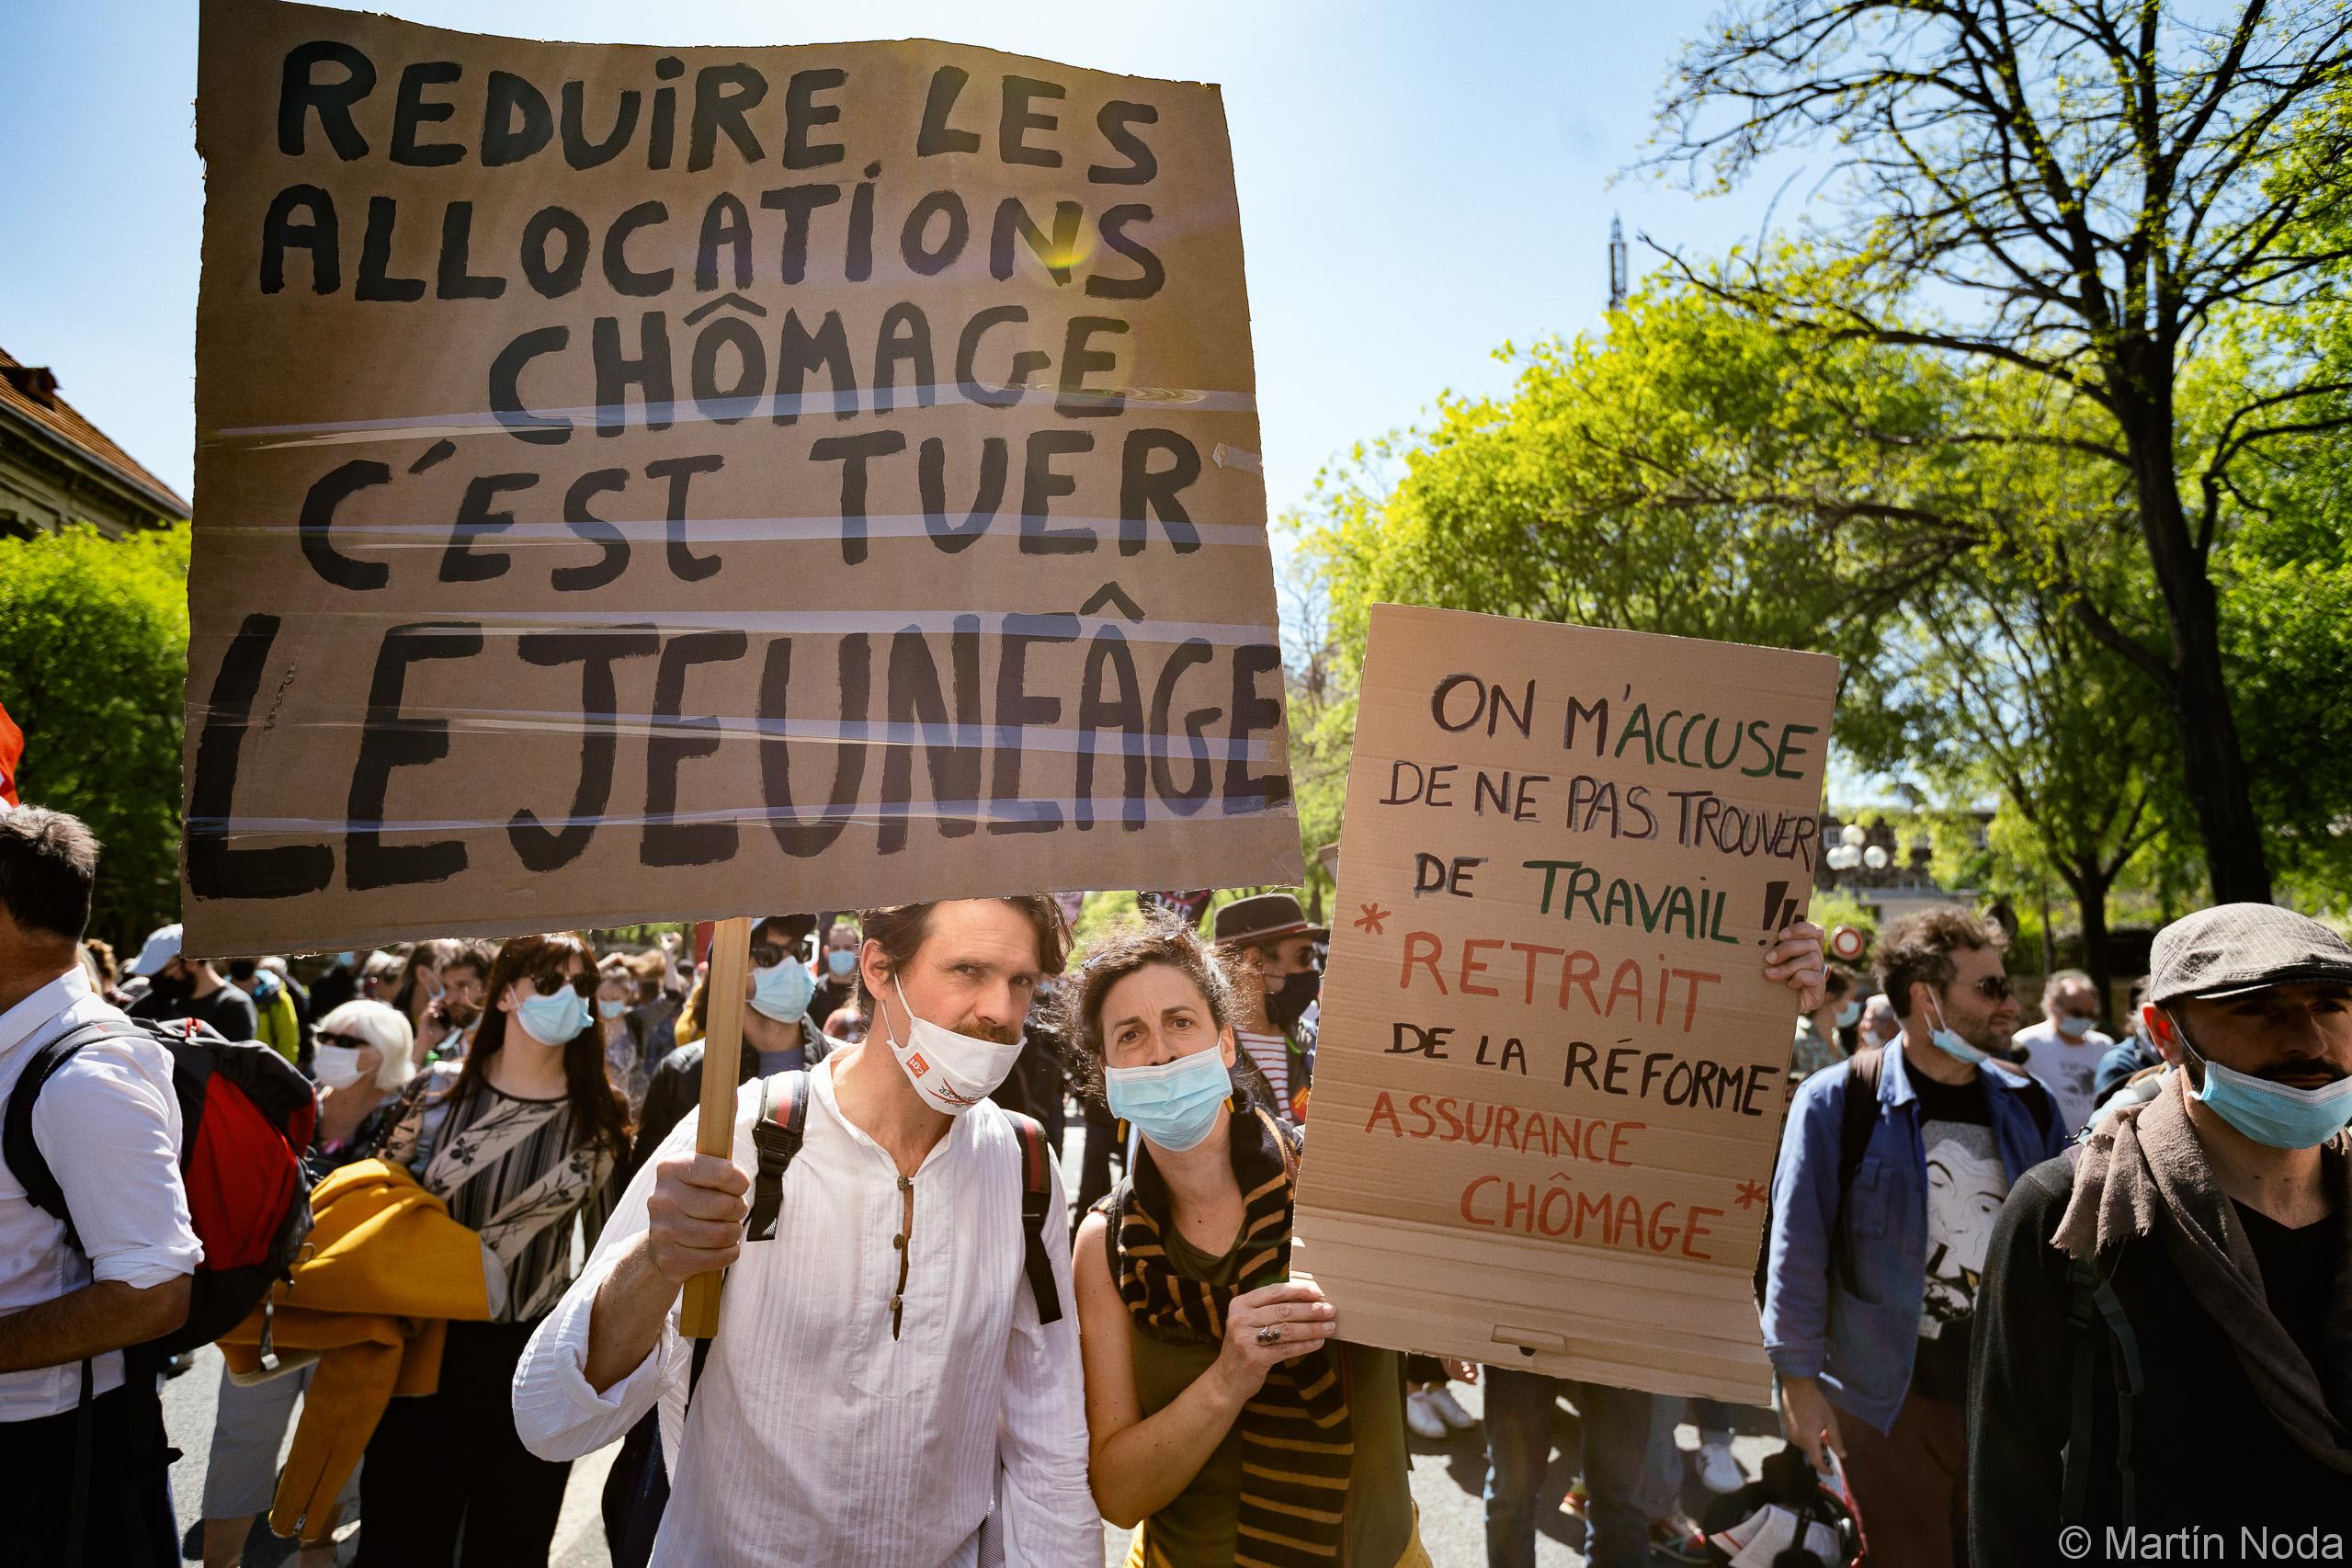 Manifestation à l'appel des occupants du théâtre de l'Odéon contre la reforme de l'assurance chômage, Paris, 23 avril 2021.